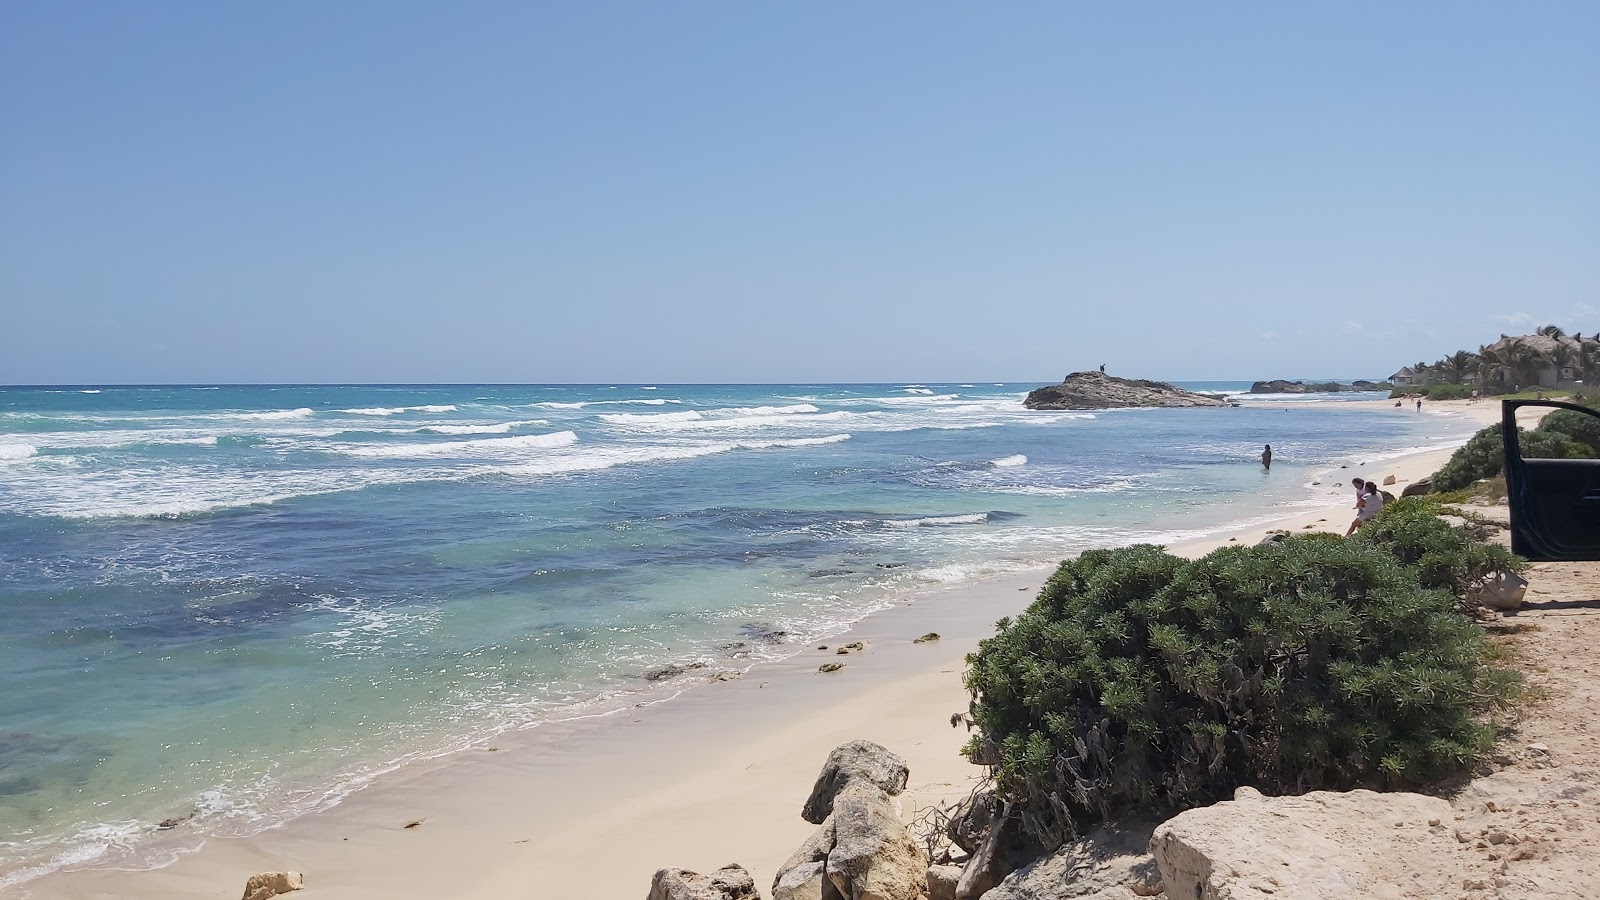 Foto af Playa Mirador - populært sted blandt afslapningskendere